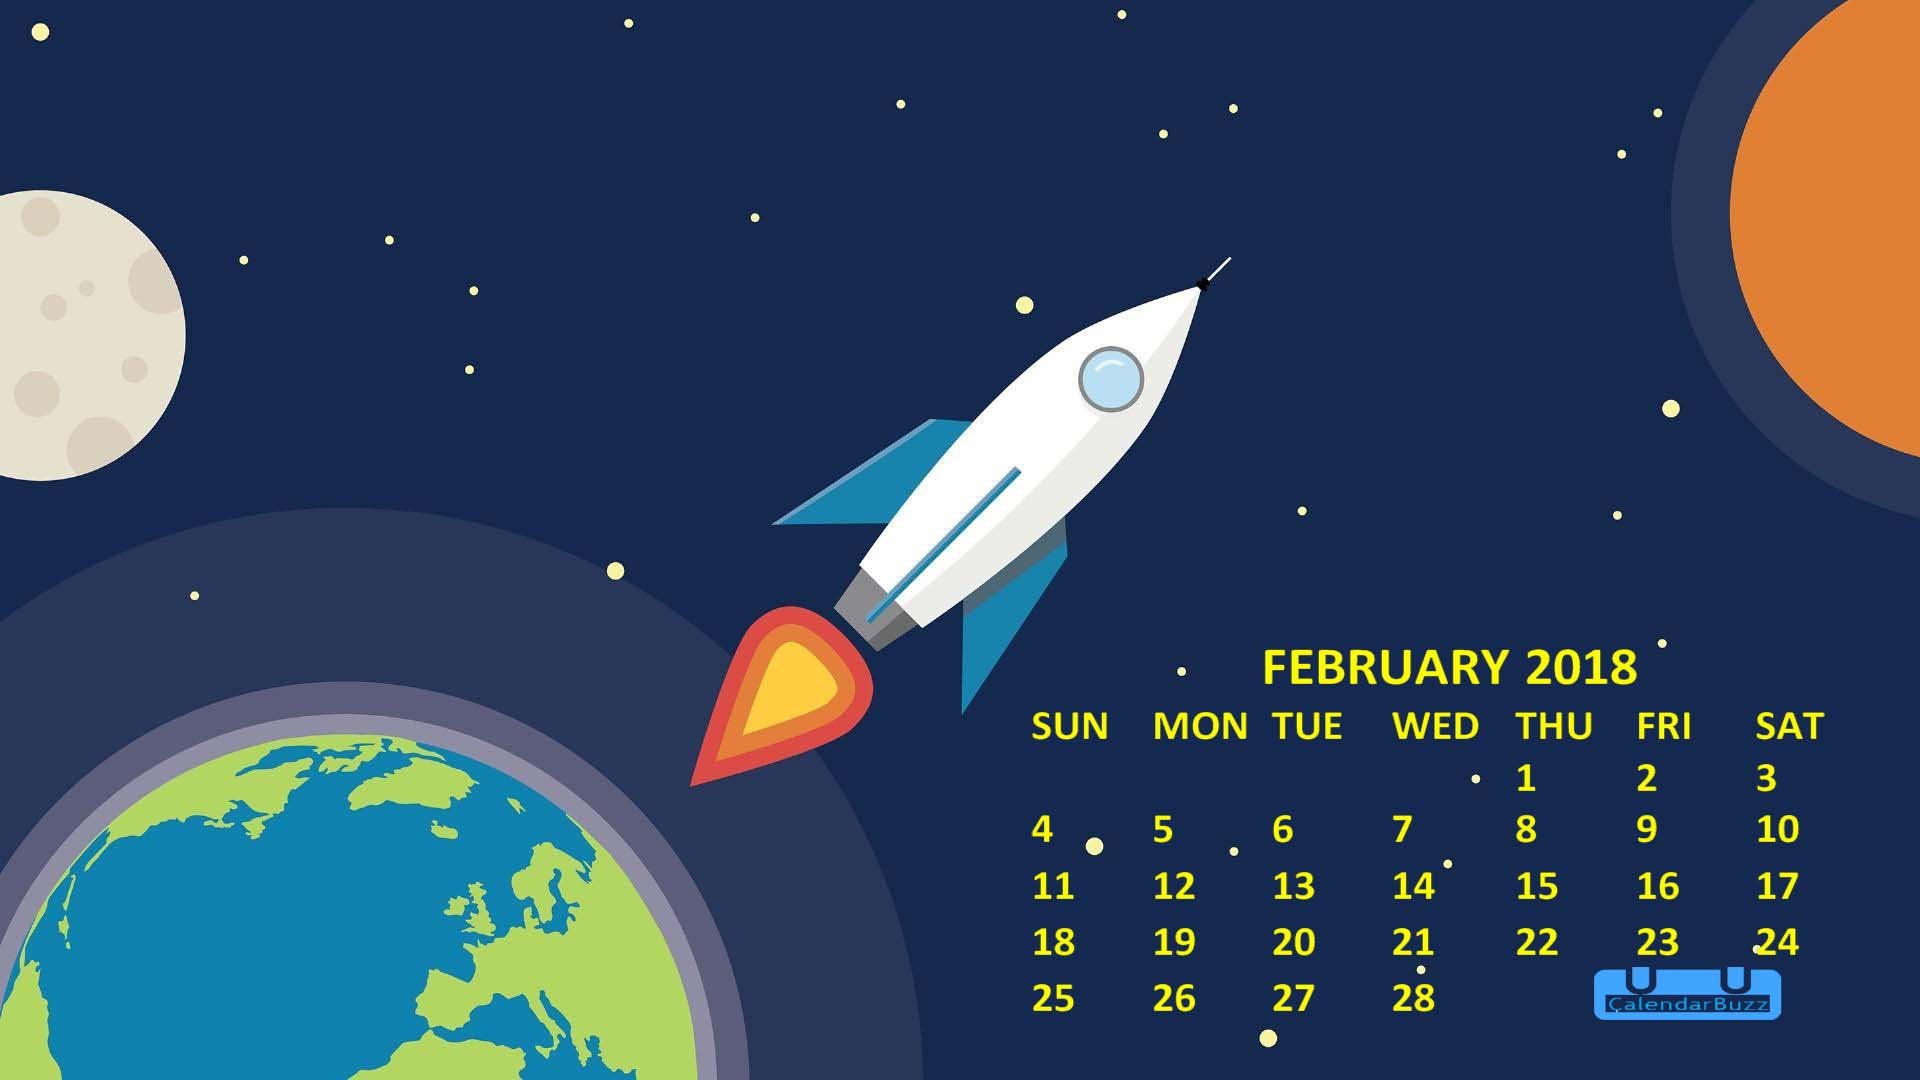 February 2018 Calendar Wallpaper Download CalendarBuzz